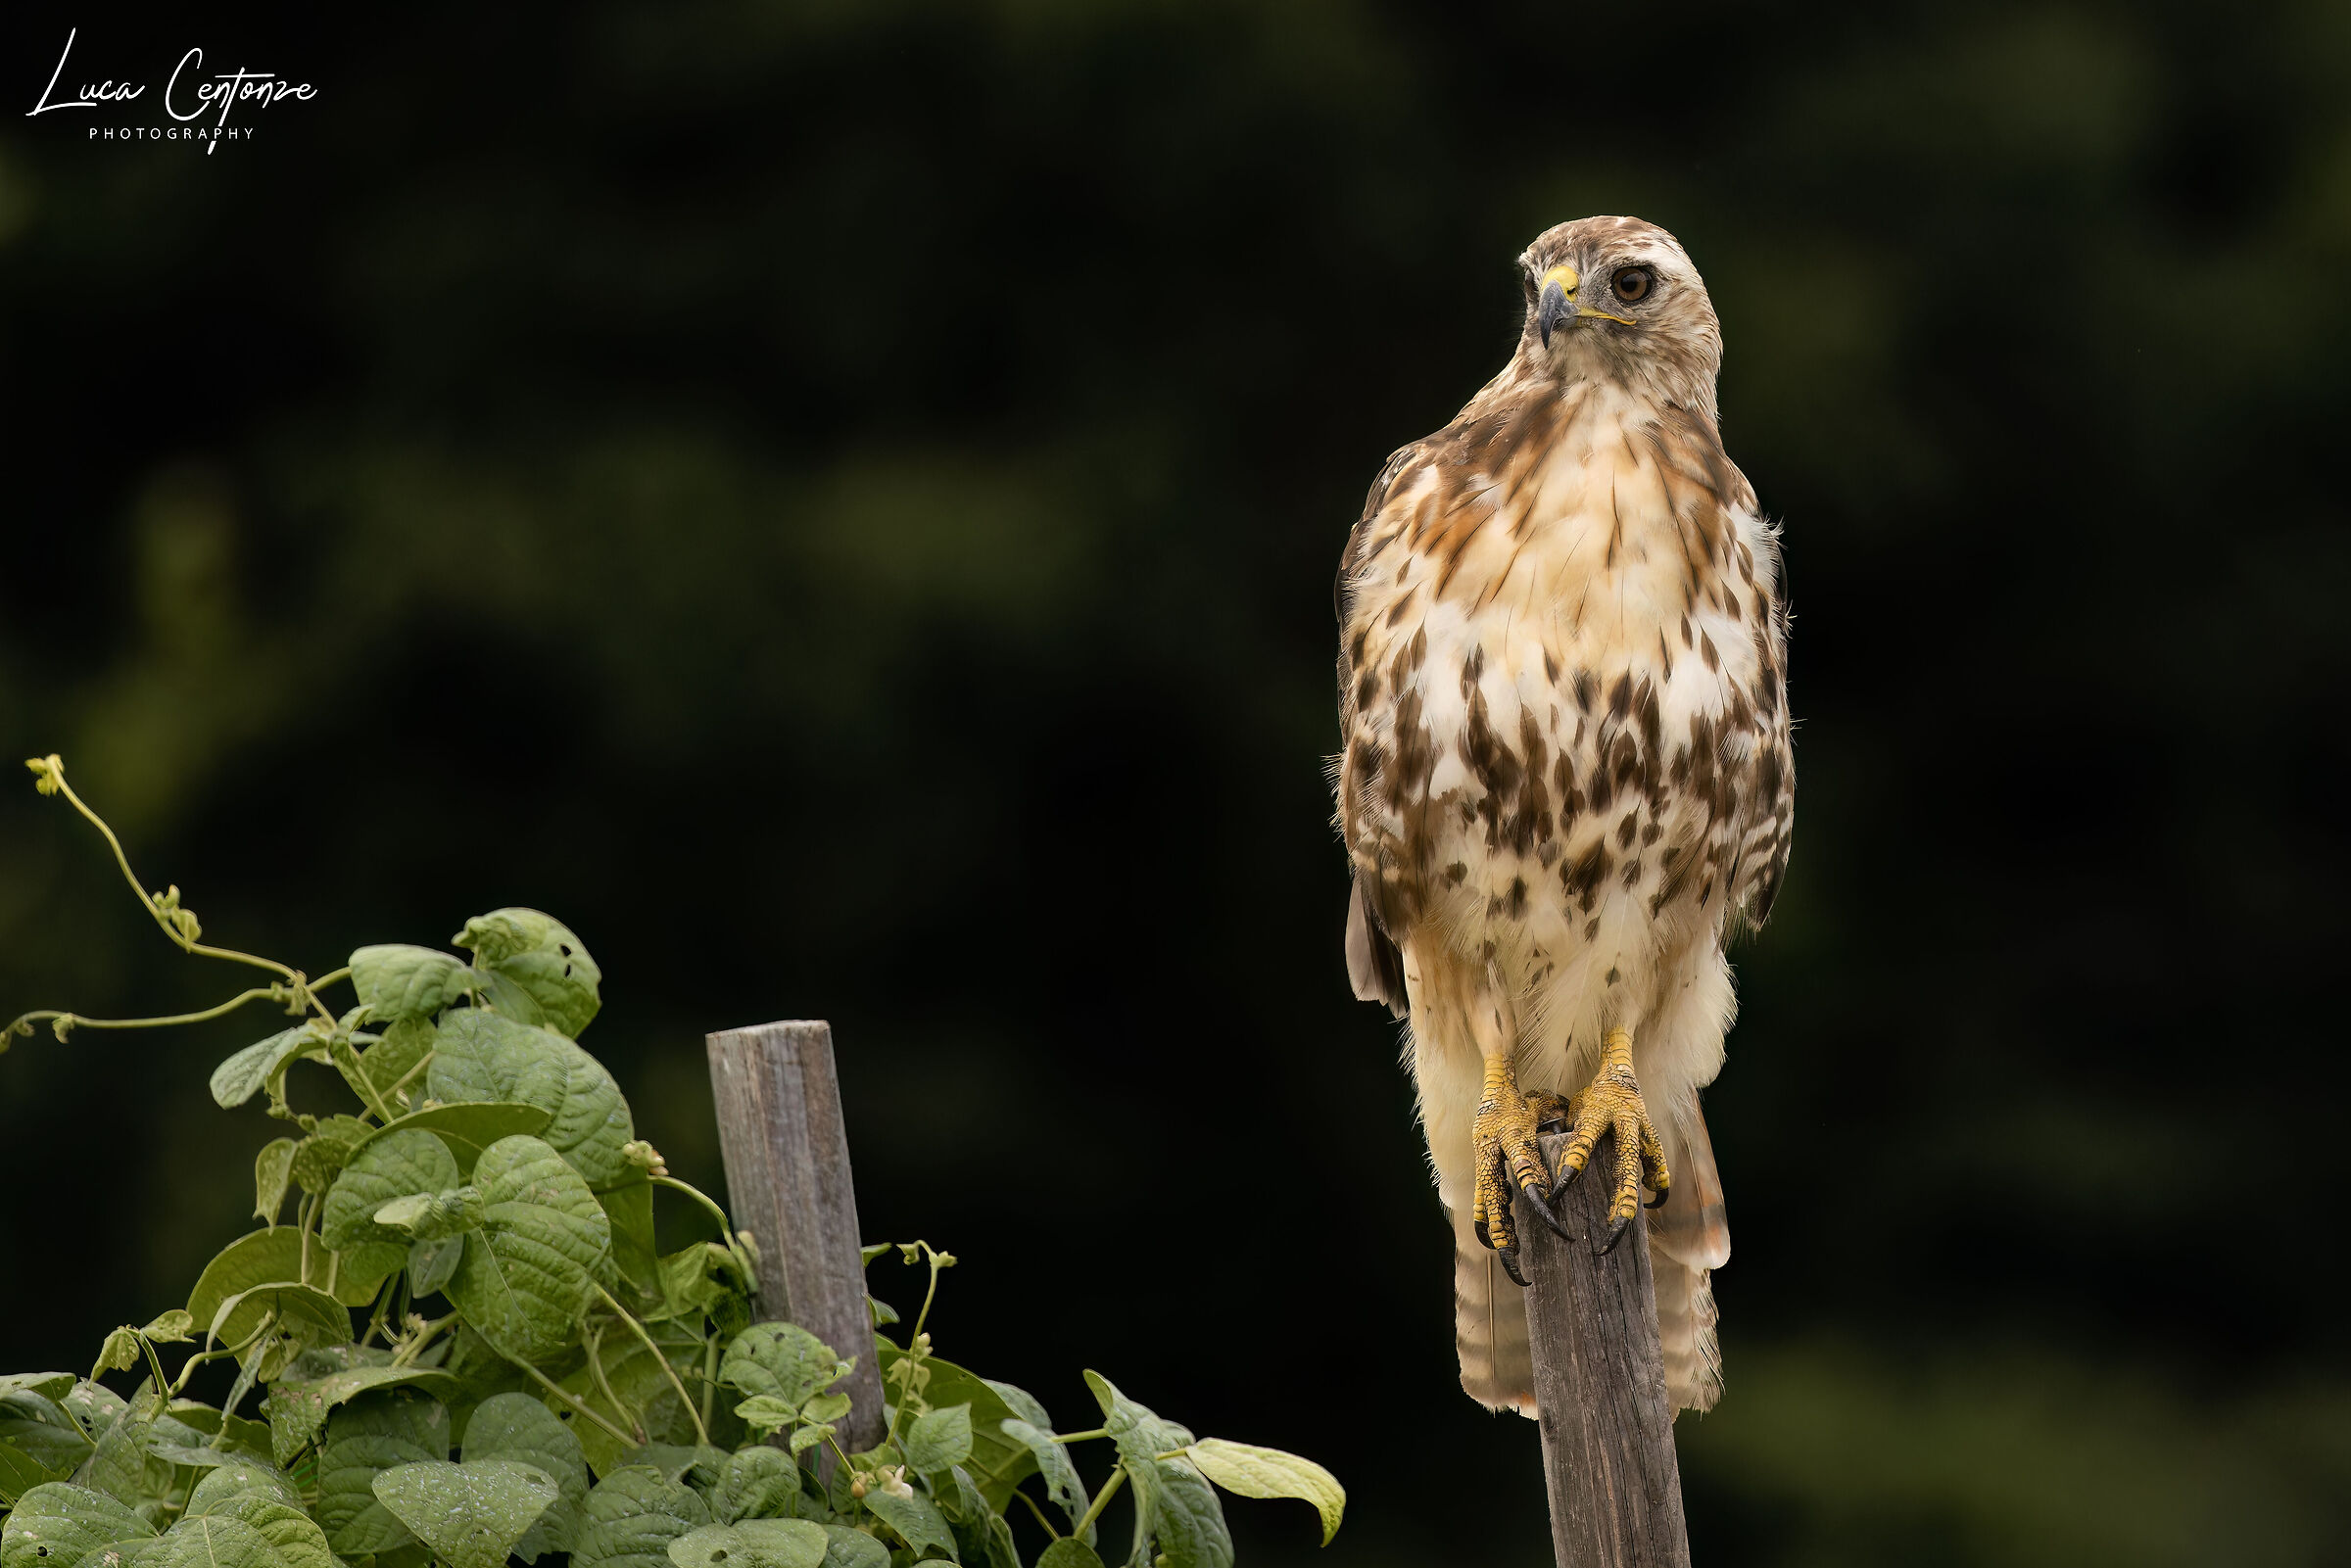 Poiana codarossa (Red-tailed Hawk)...